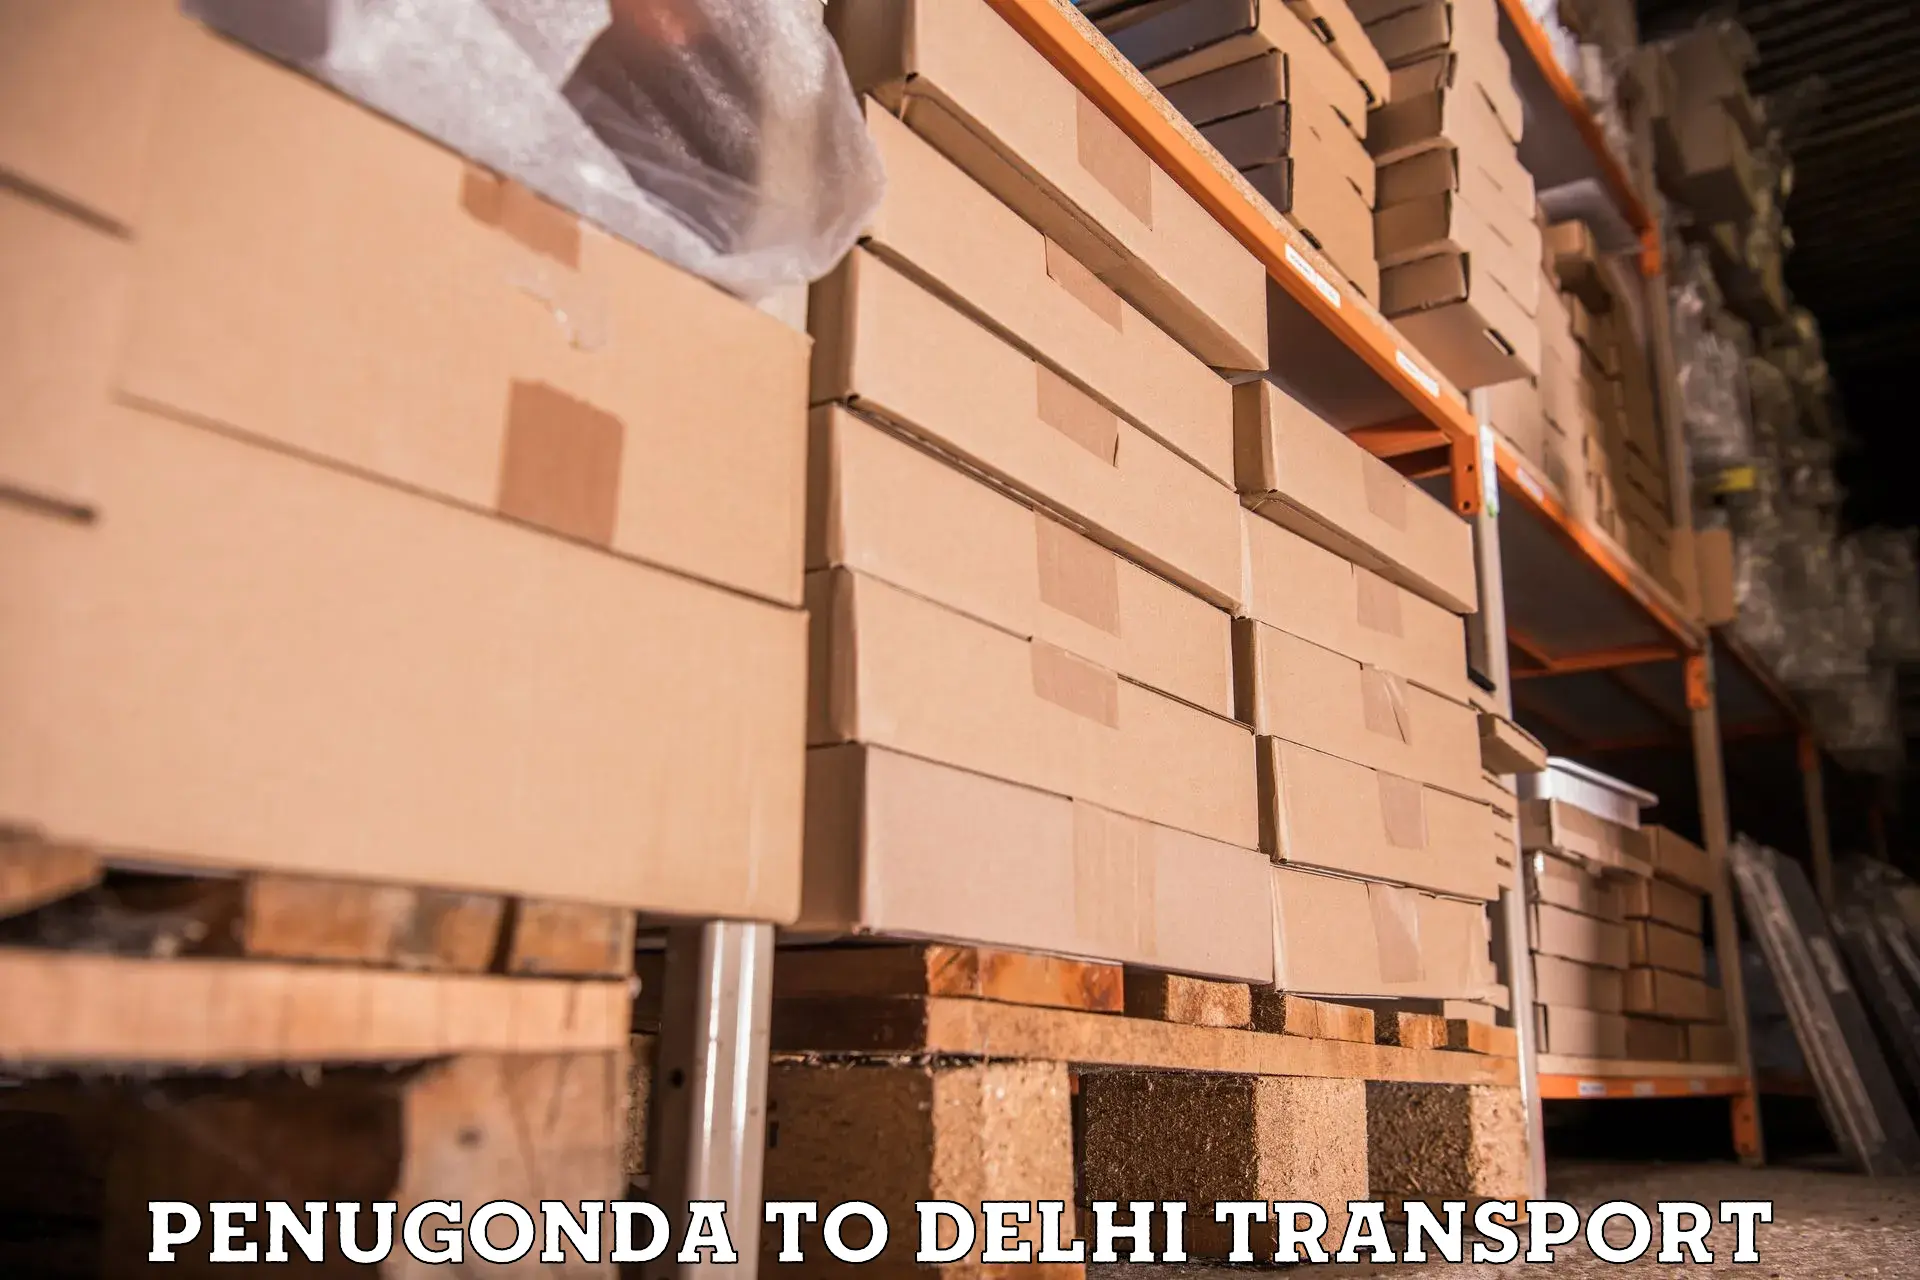 Container transport service Penugonda to Delhi